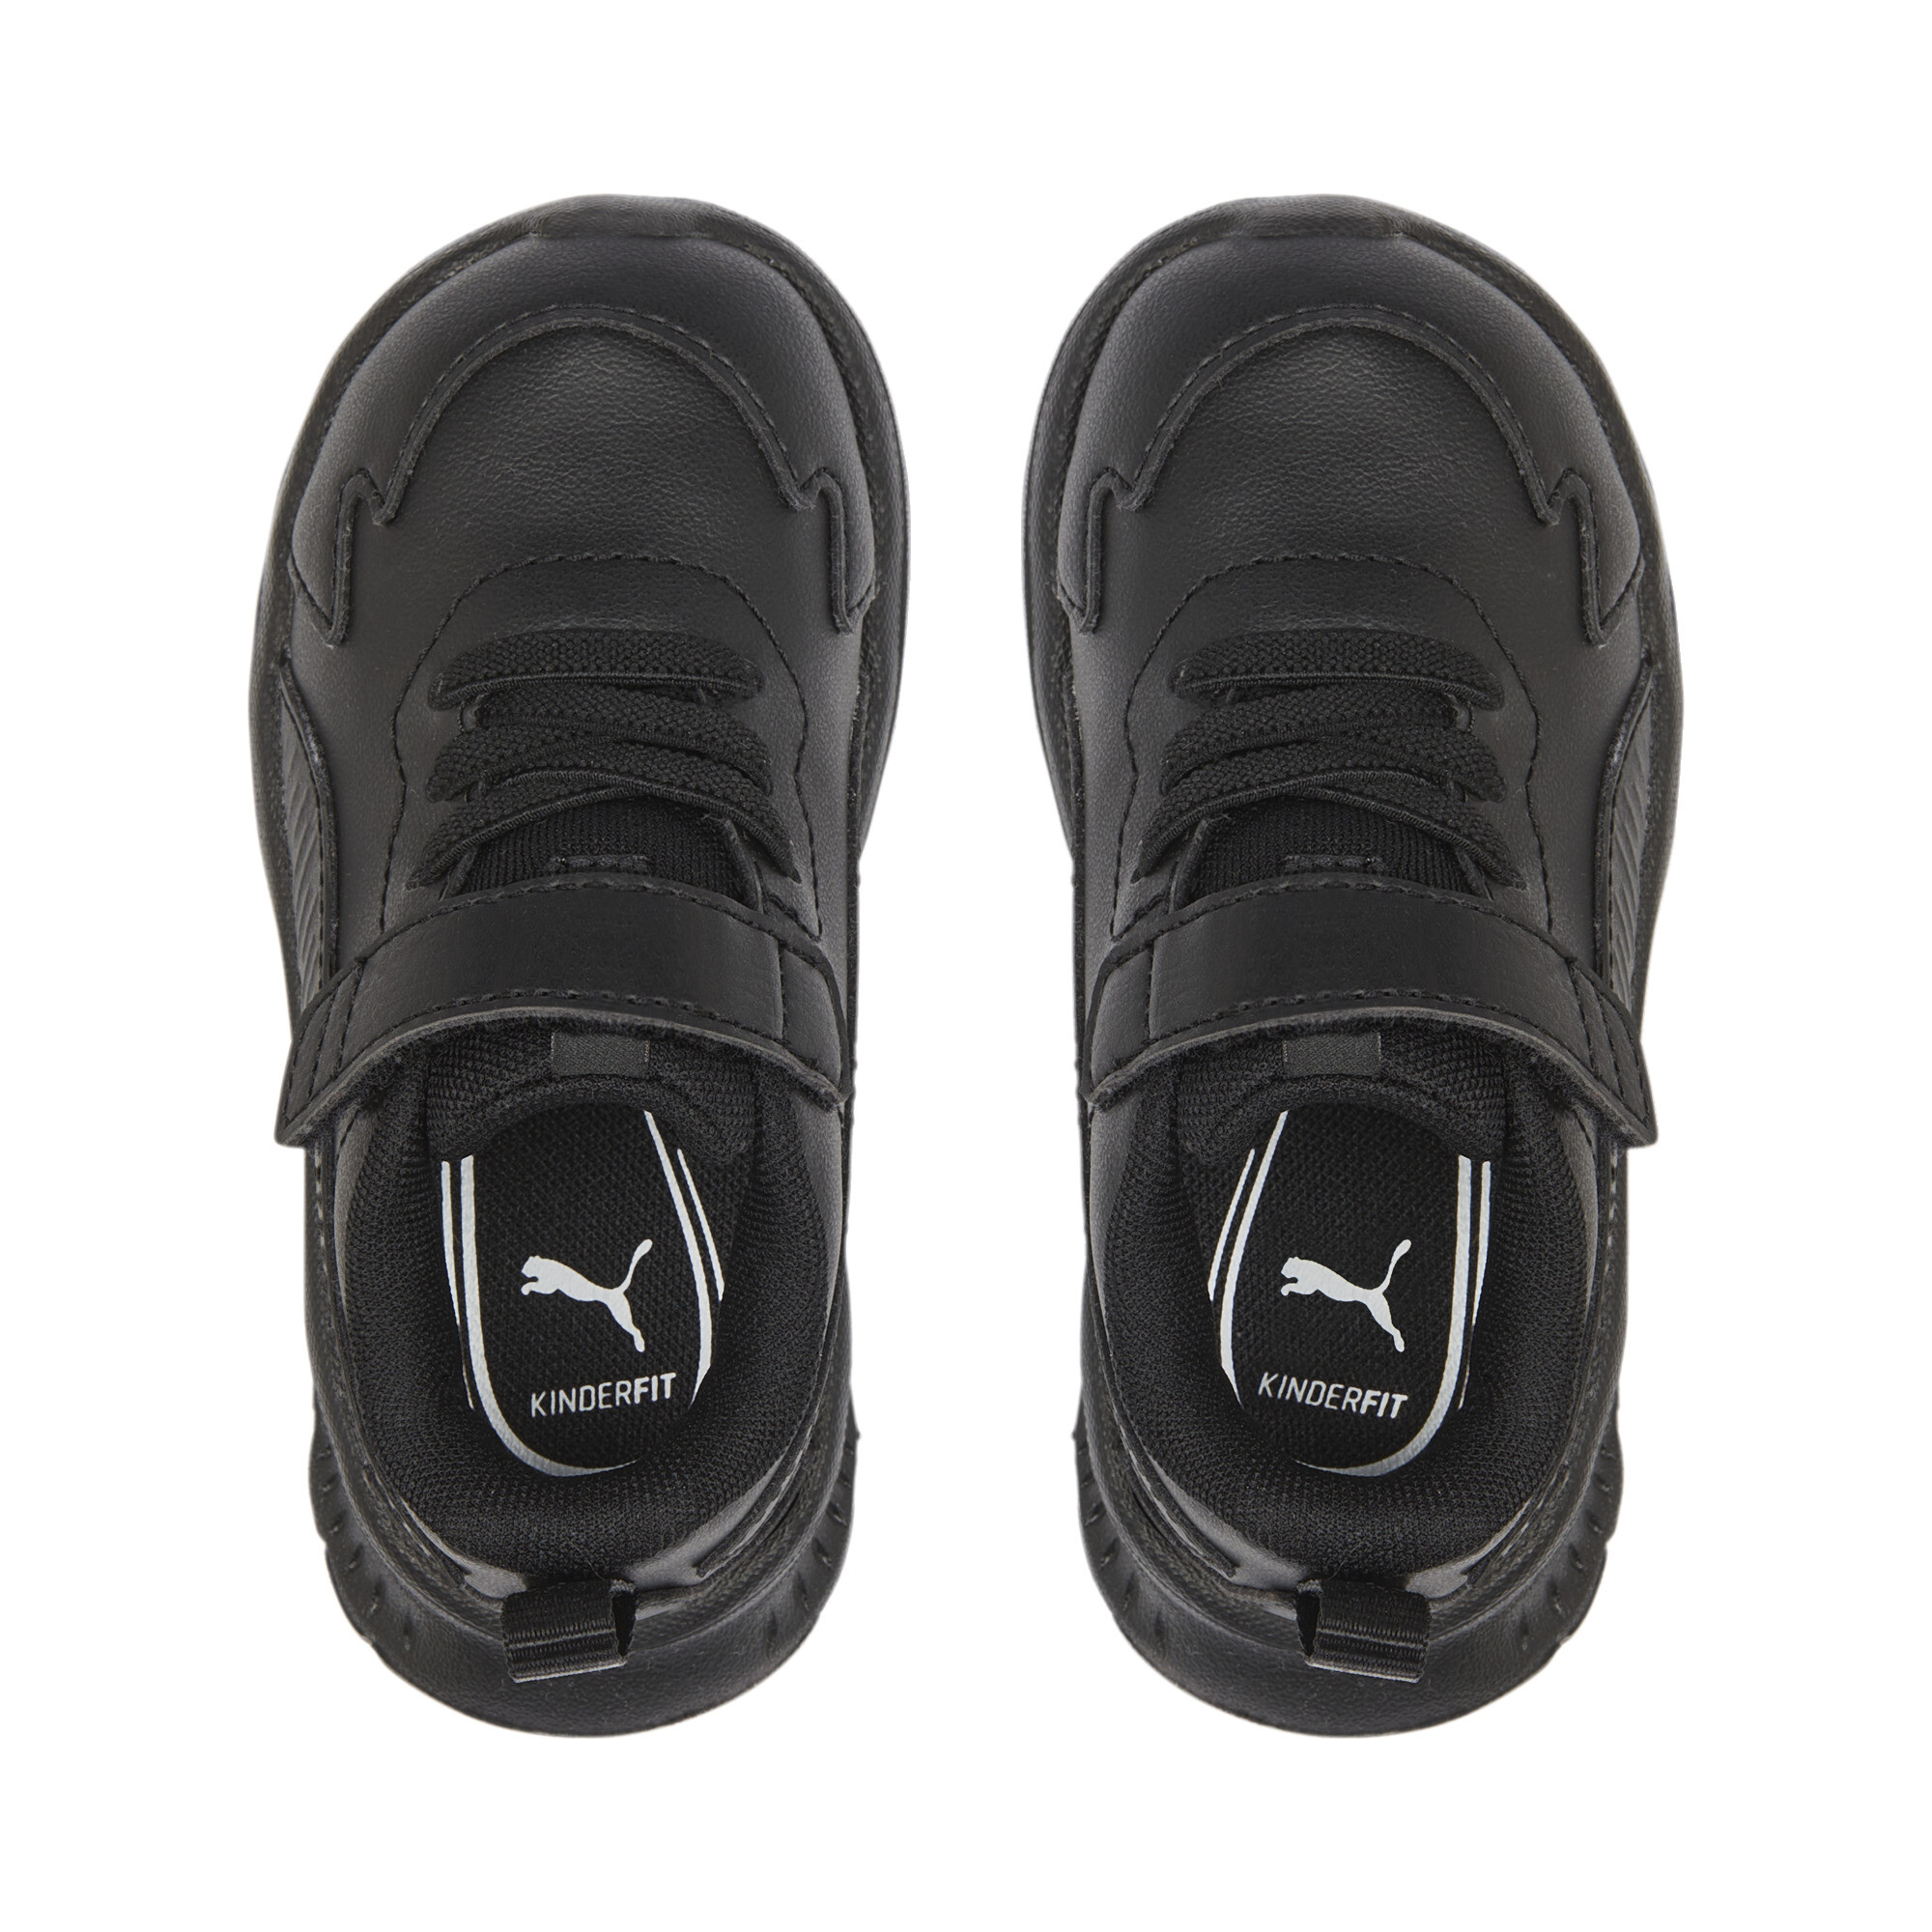 PUMA Evolve Run Superlight Alternative Closure Sneakers Babies In Black, Size EU 24